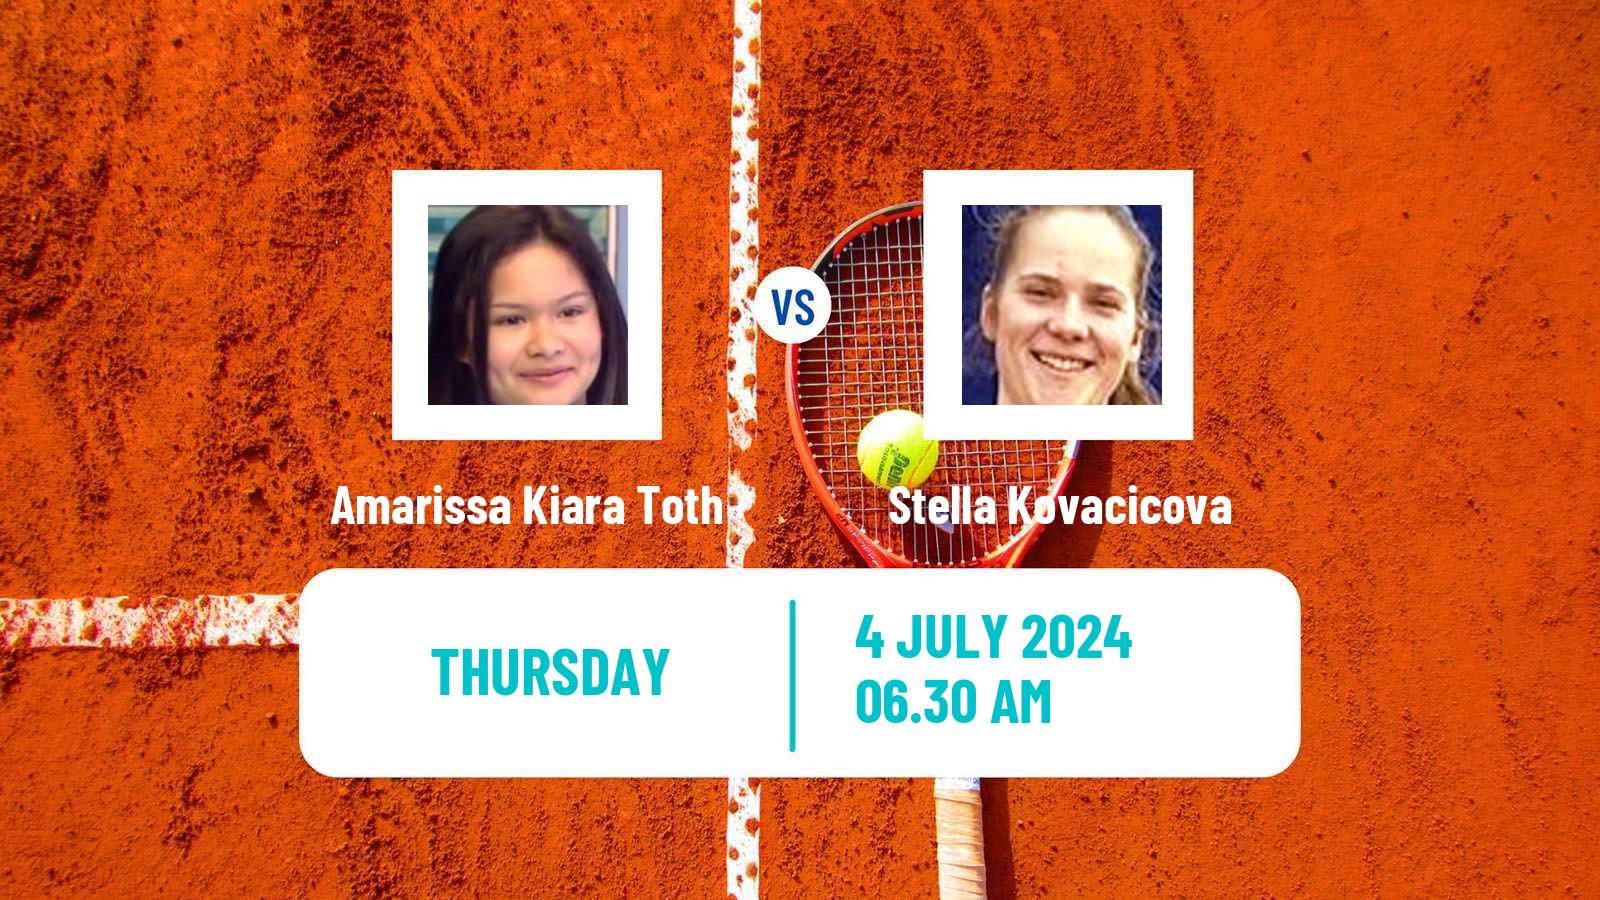 Tennis ITF W15 Mogyorod Women Amarissa Kiara Toth - Stella Kovacicova